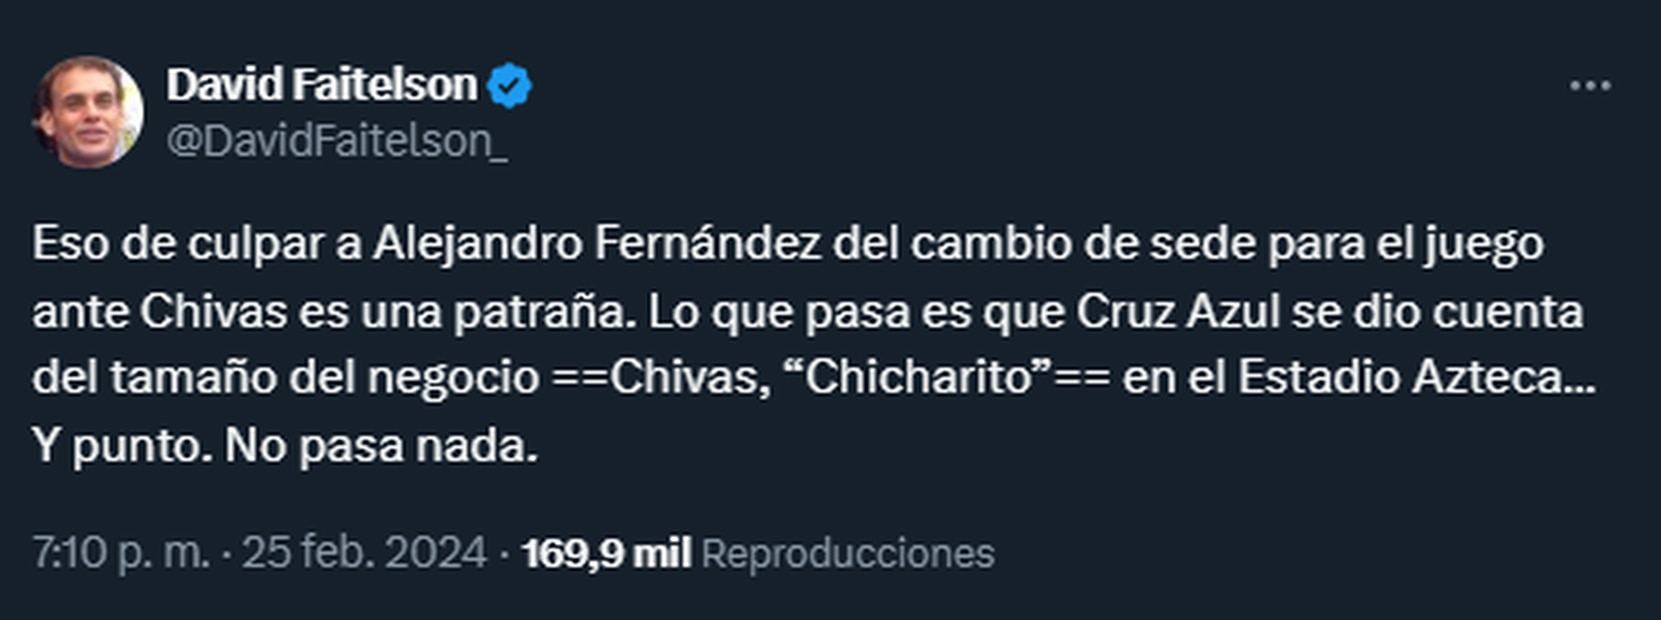 David Faitelson: Culpar a Alejandro Fernández del cambio sede del Cruz Azul vs Chivas es una patraña - Foto: Captura de pantalla (X)